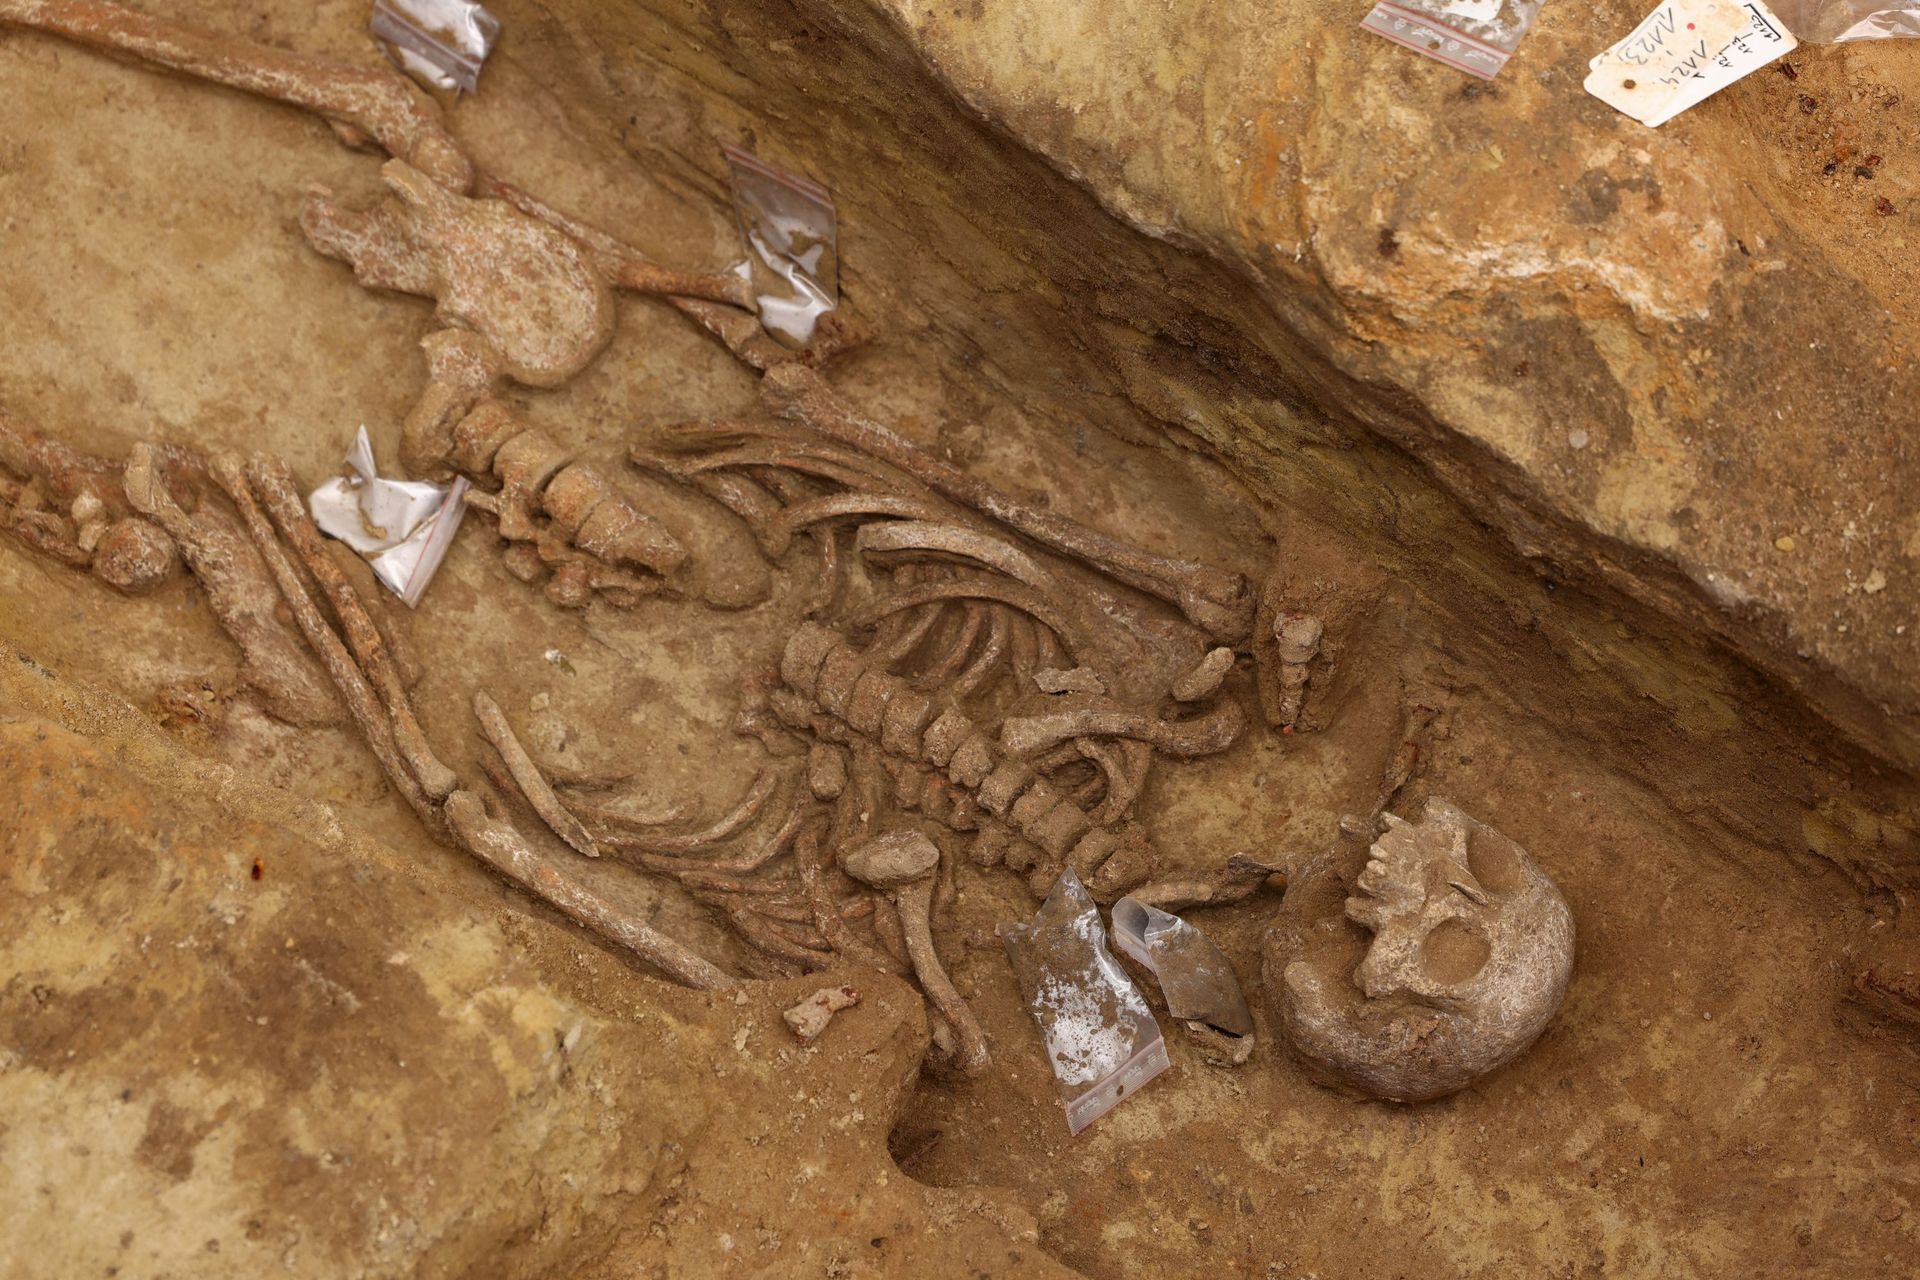 Un des squelettes découverts dans la nécropole de la station métro Port-Royal